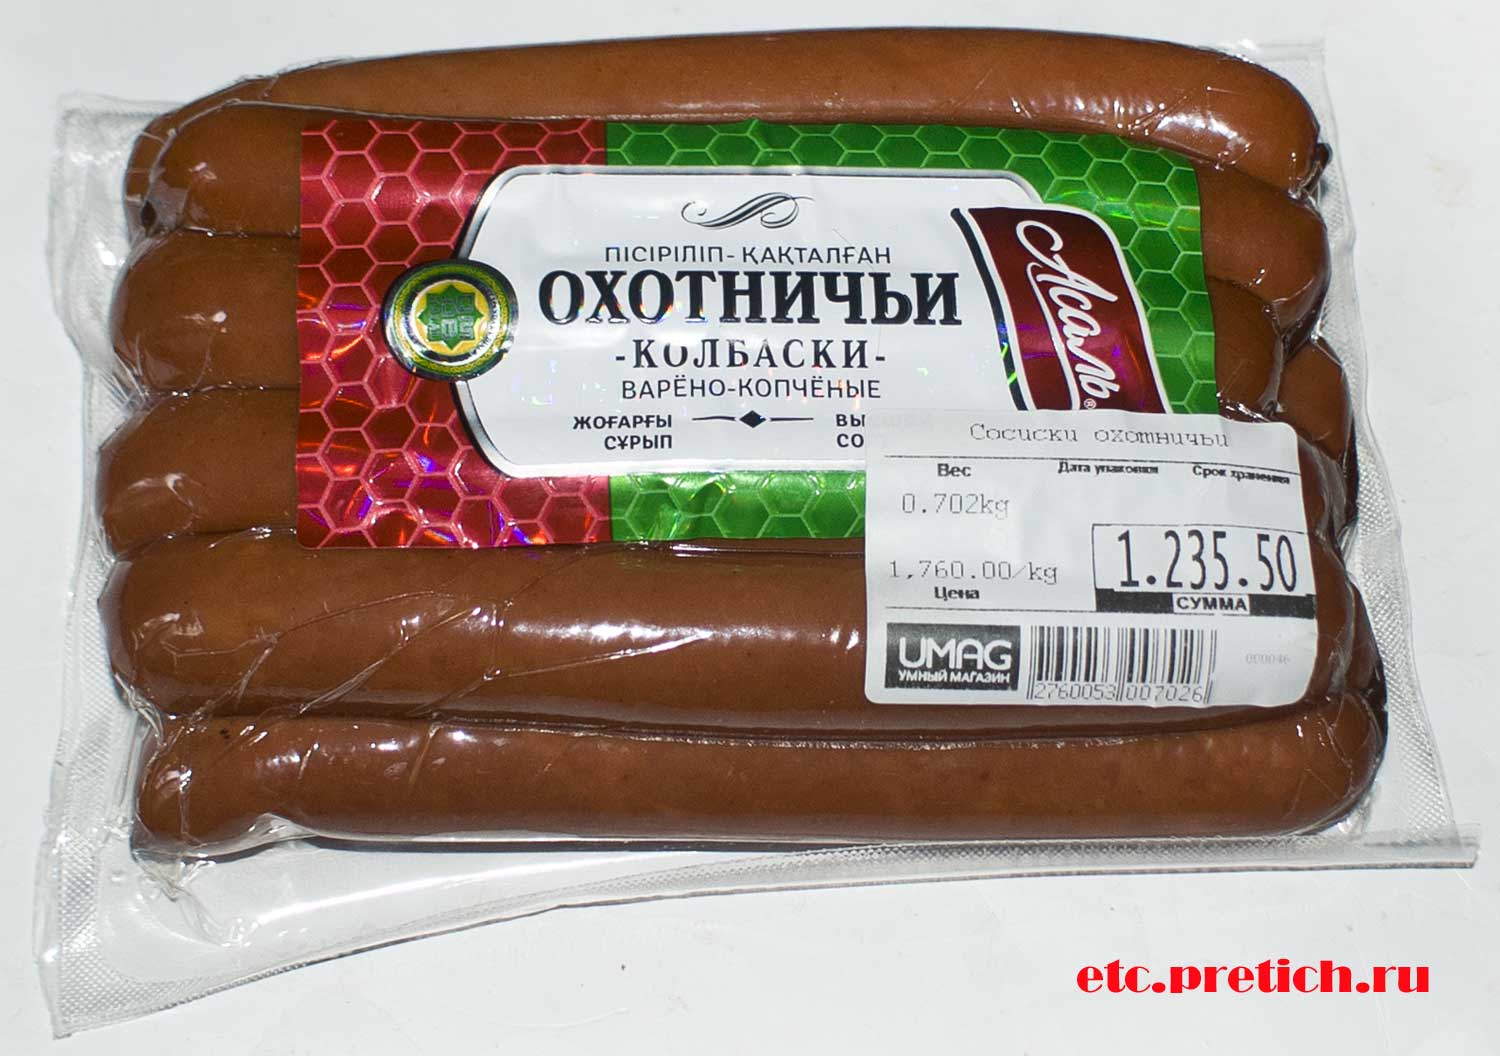 Отзыв на охотничьи колбаски Асаль из Казахстана ИП ПИР, как на вкус?